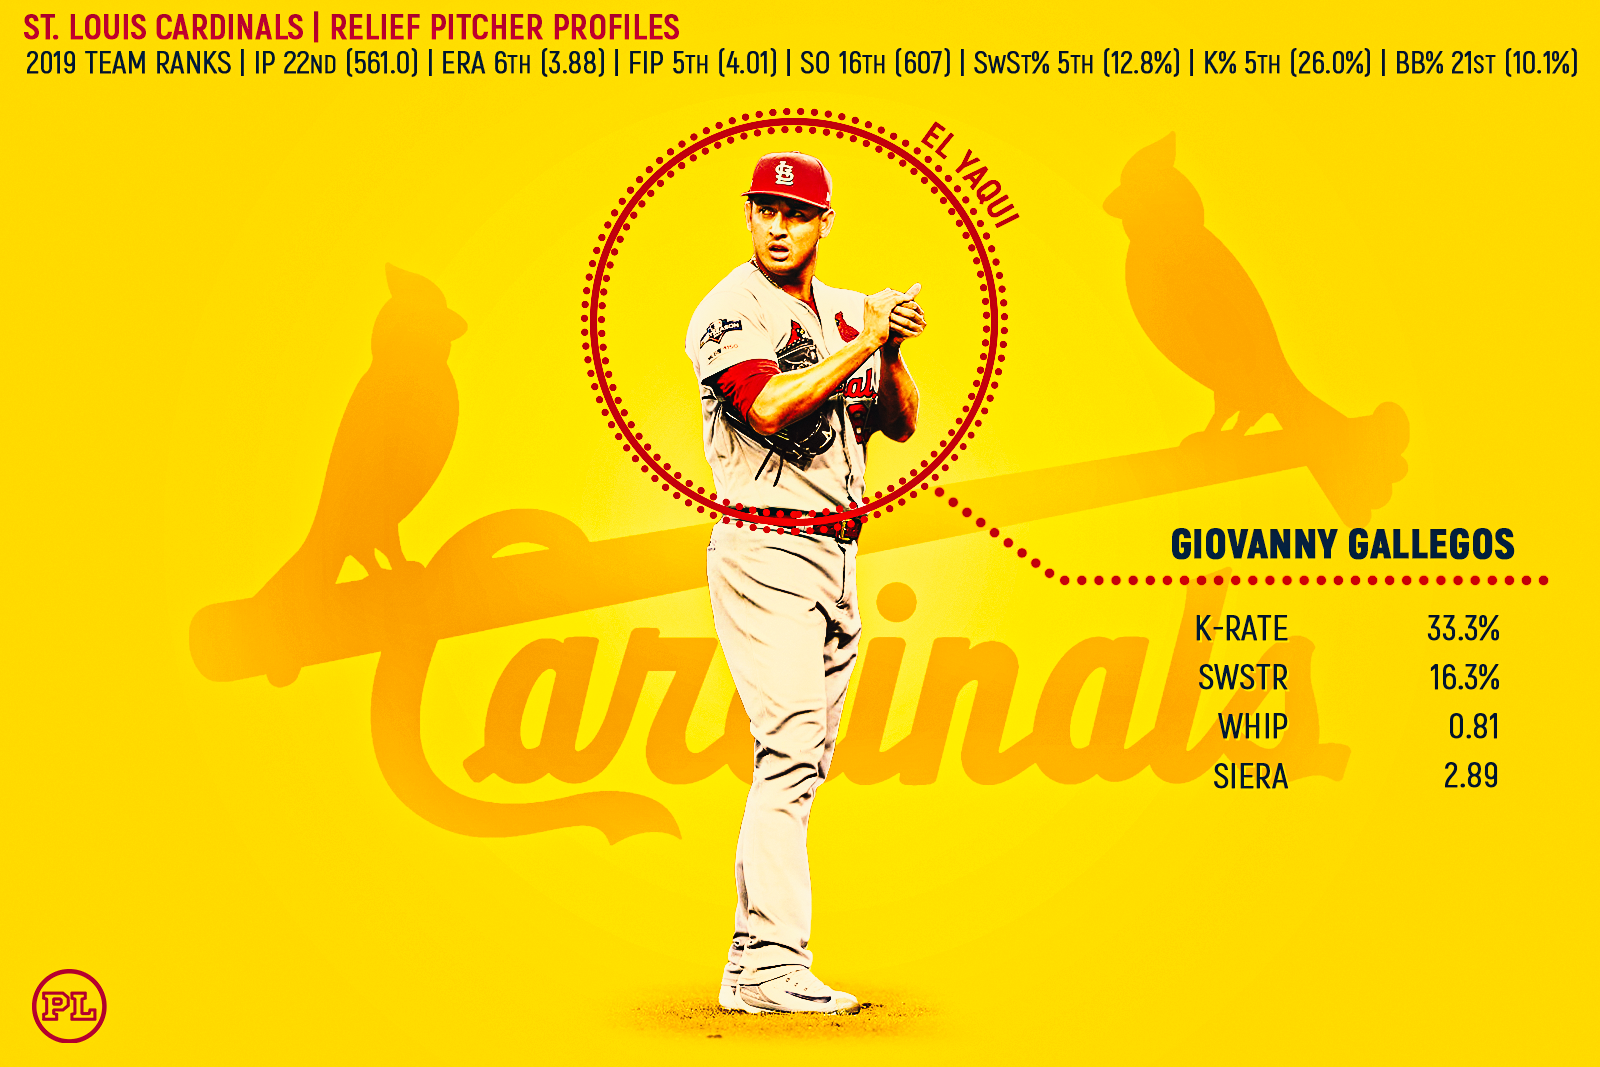 Player Profiles 2020: St. Louis Cardinals Bullpen - Pitcher List